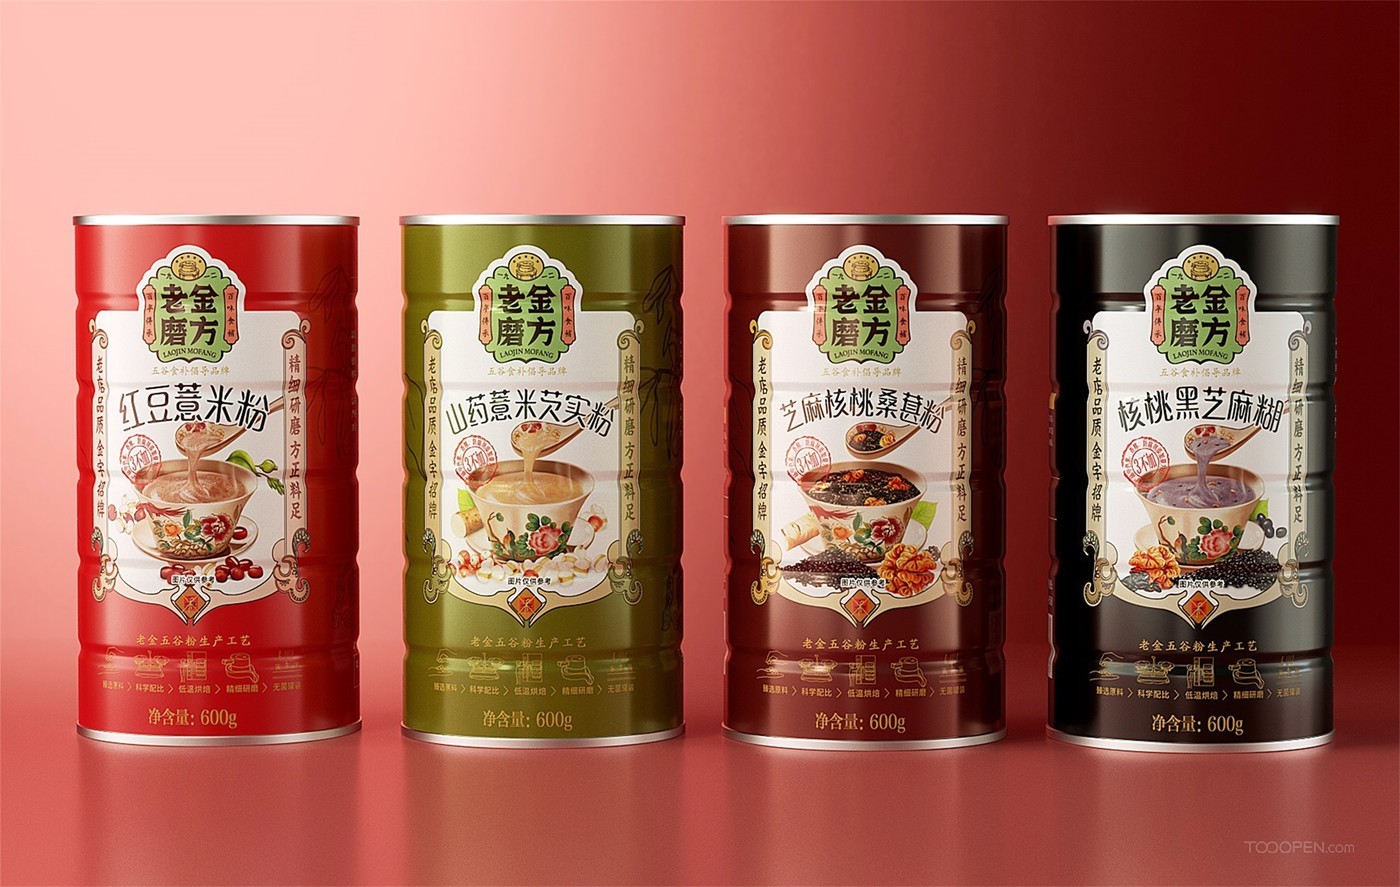 传统美食红豆薏米粉产品包装设计图片-03